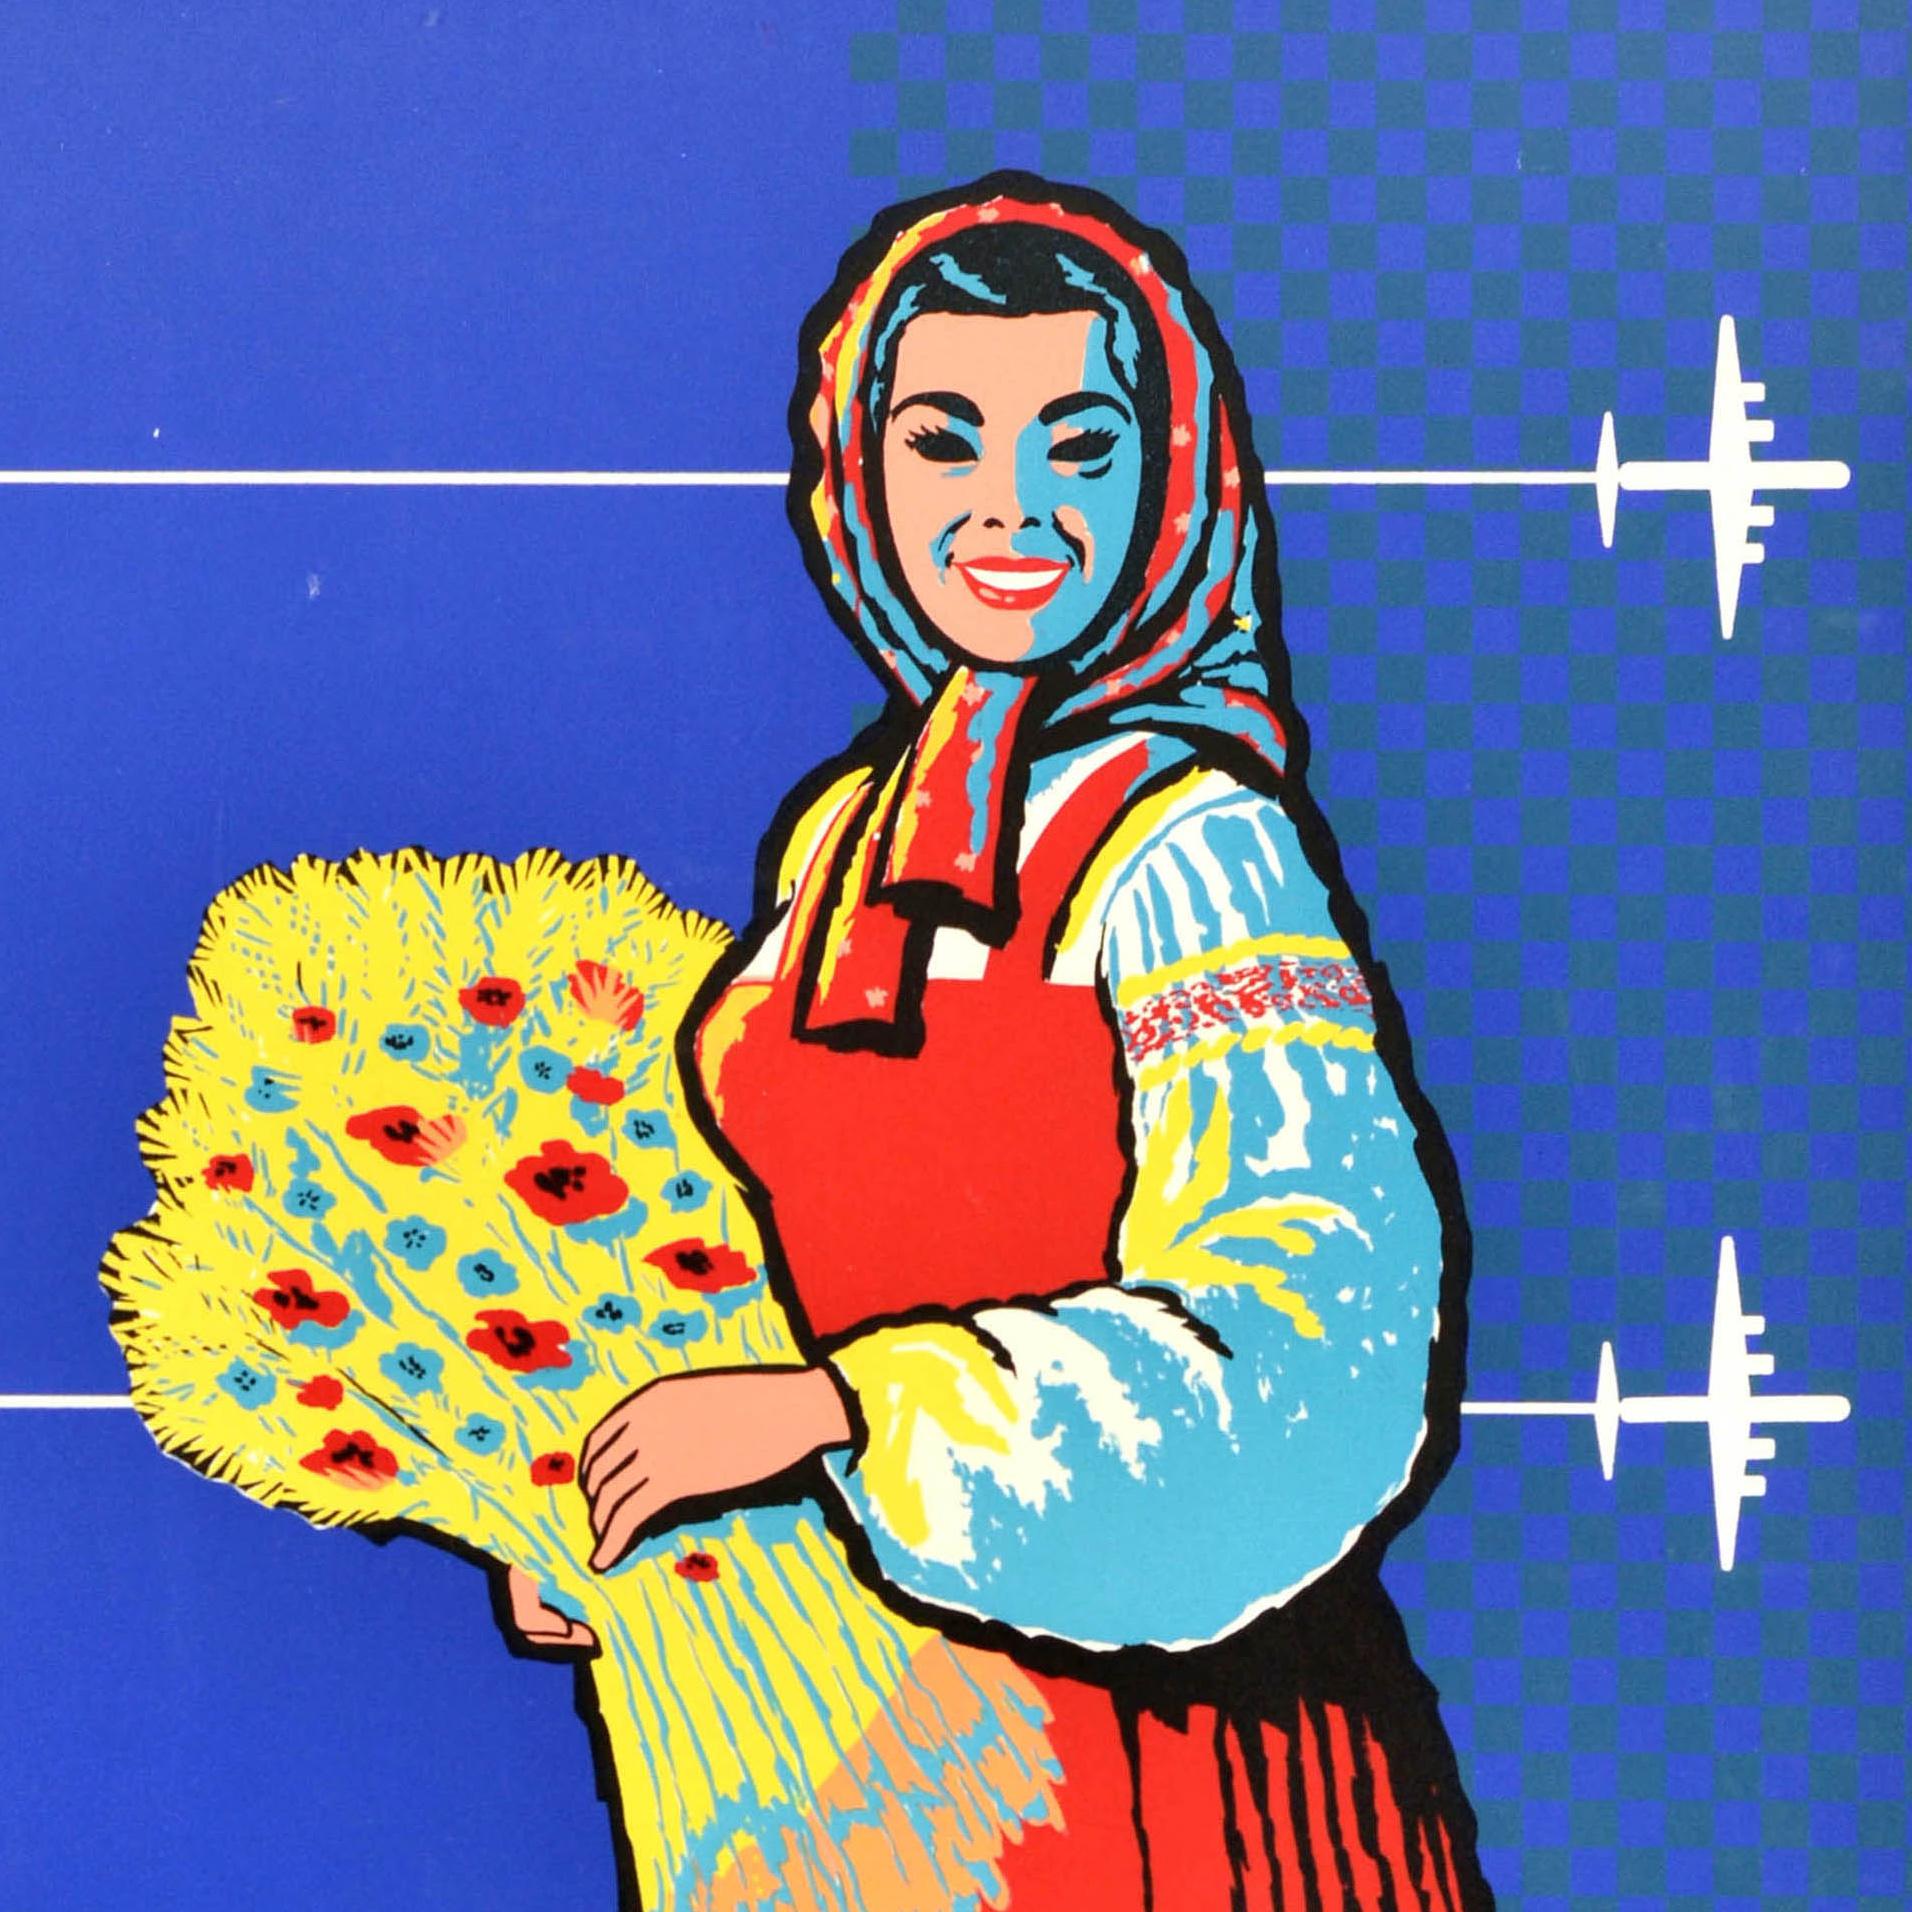 Original-Reisewerbeplakat - Naar Rusland met Sabena / Nach Russland mit der Sabena (die nationale Fluggesellschaft Belgiens von 1923-2001) mit einem Design aus der Mitte des Jahrhunderts, das eine lächelnde Dame in traditioneller russischer Kleidung